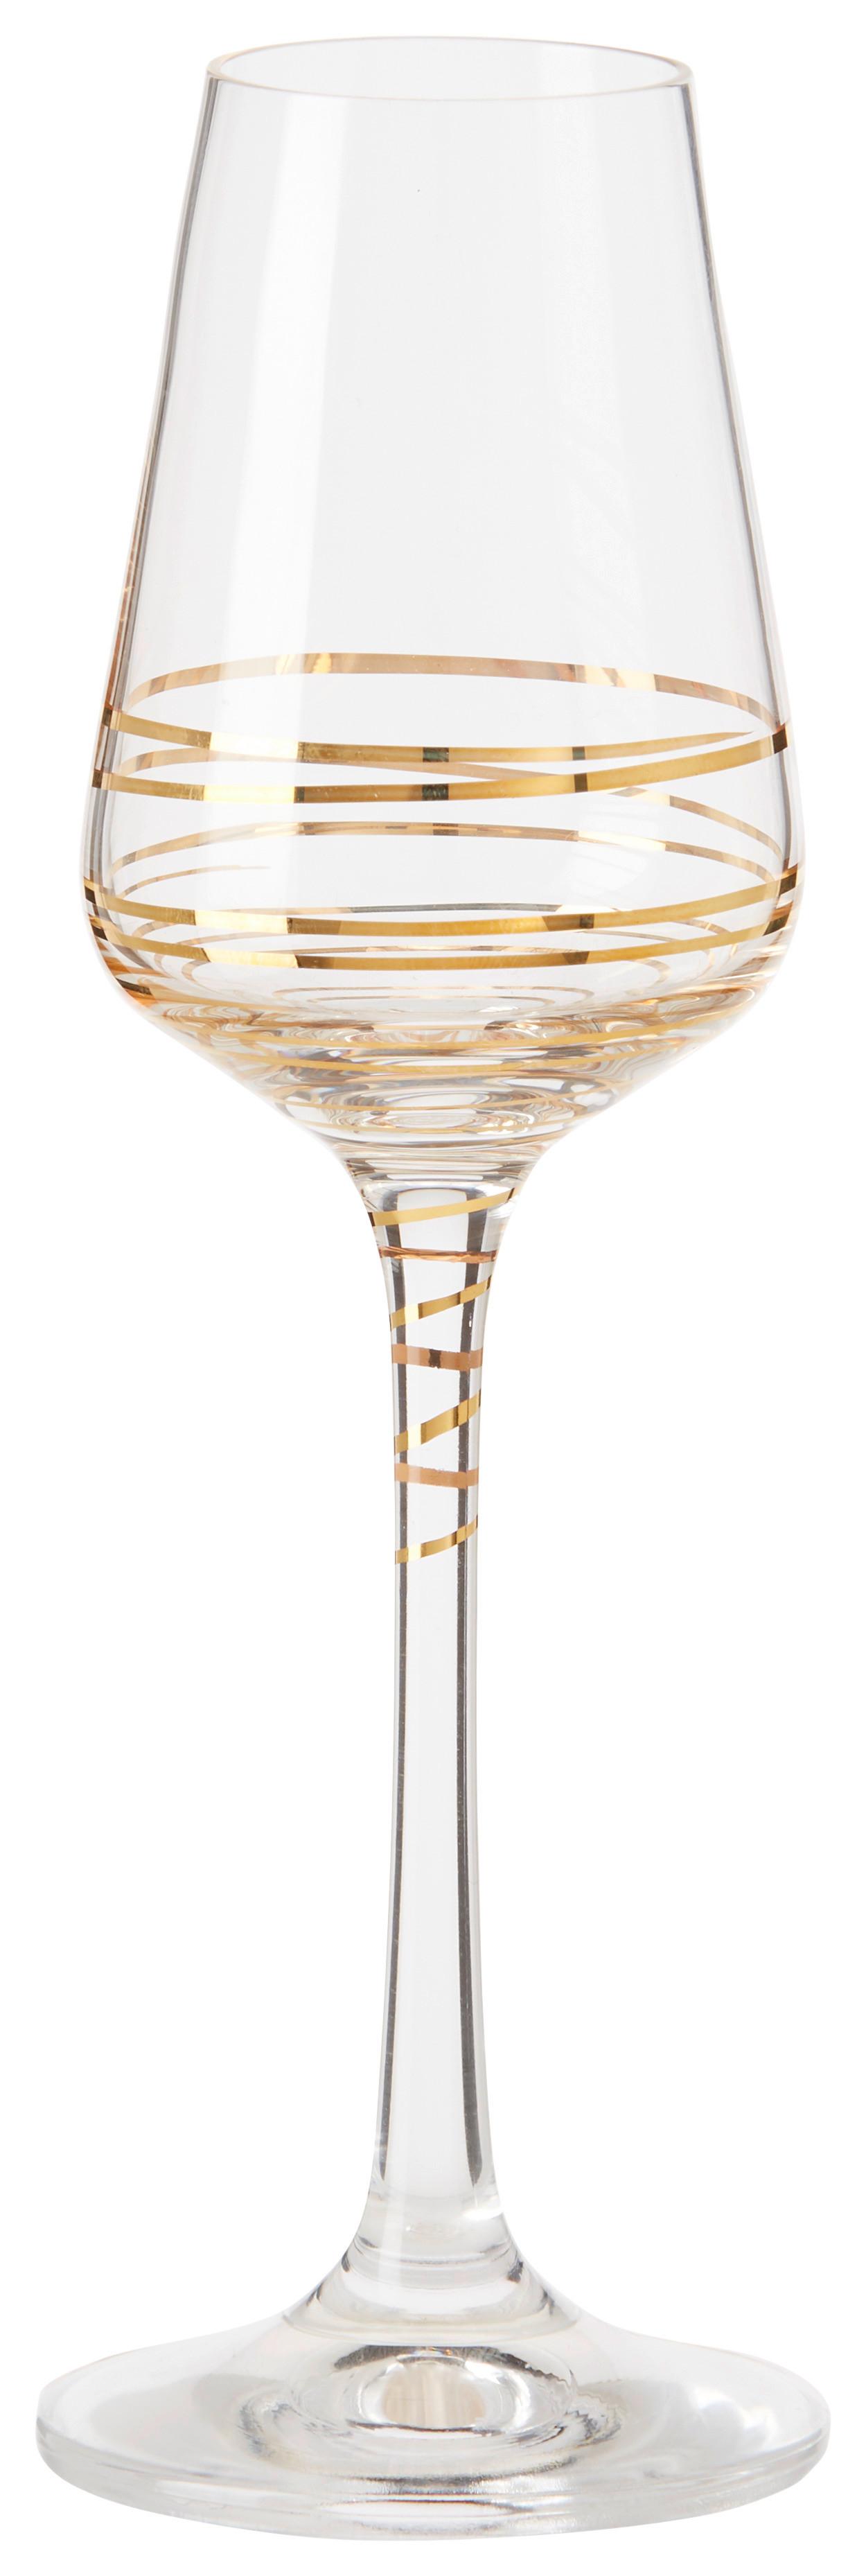 Pahar pentru tărie Elegance - clar/auriu, Modern, sticlă (0,065l) - Bohemia